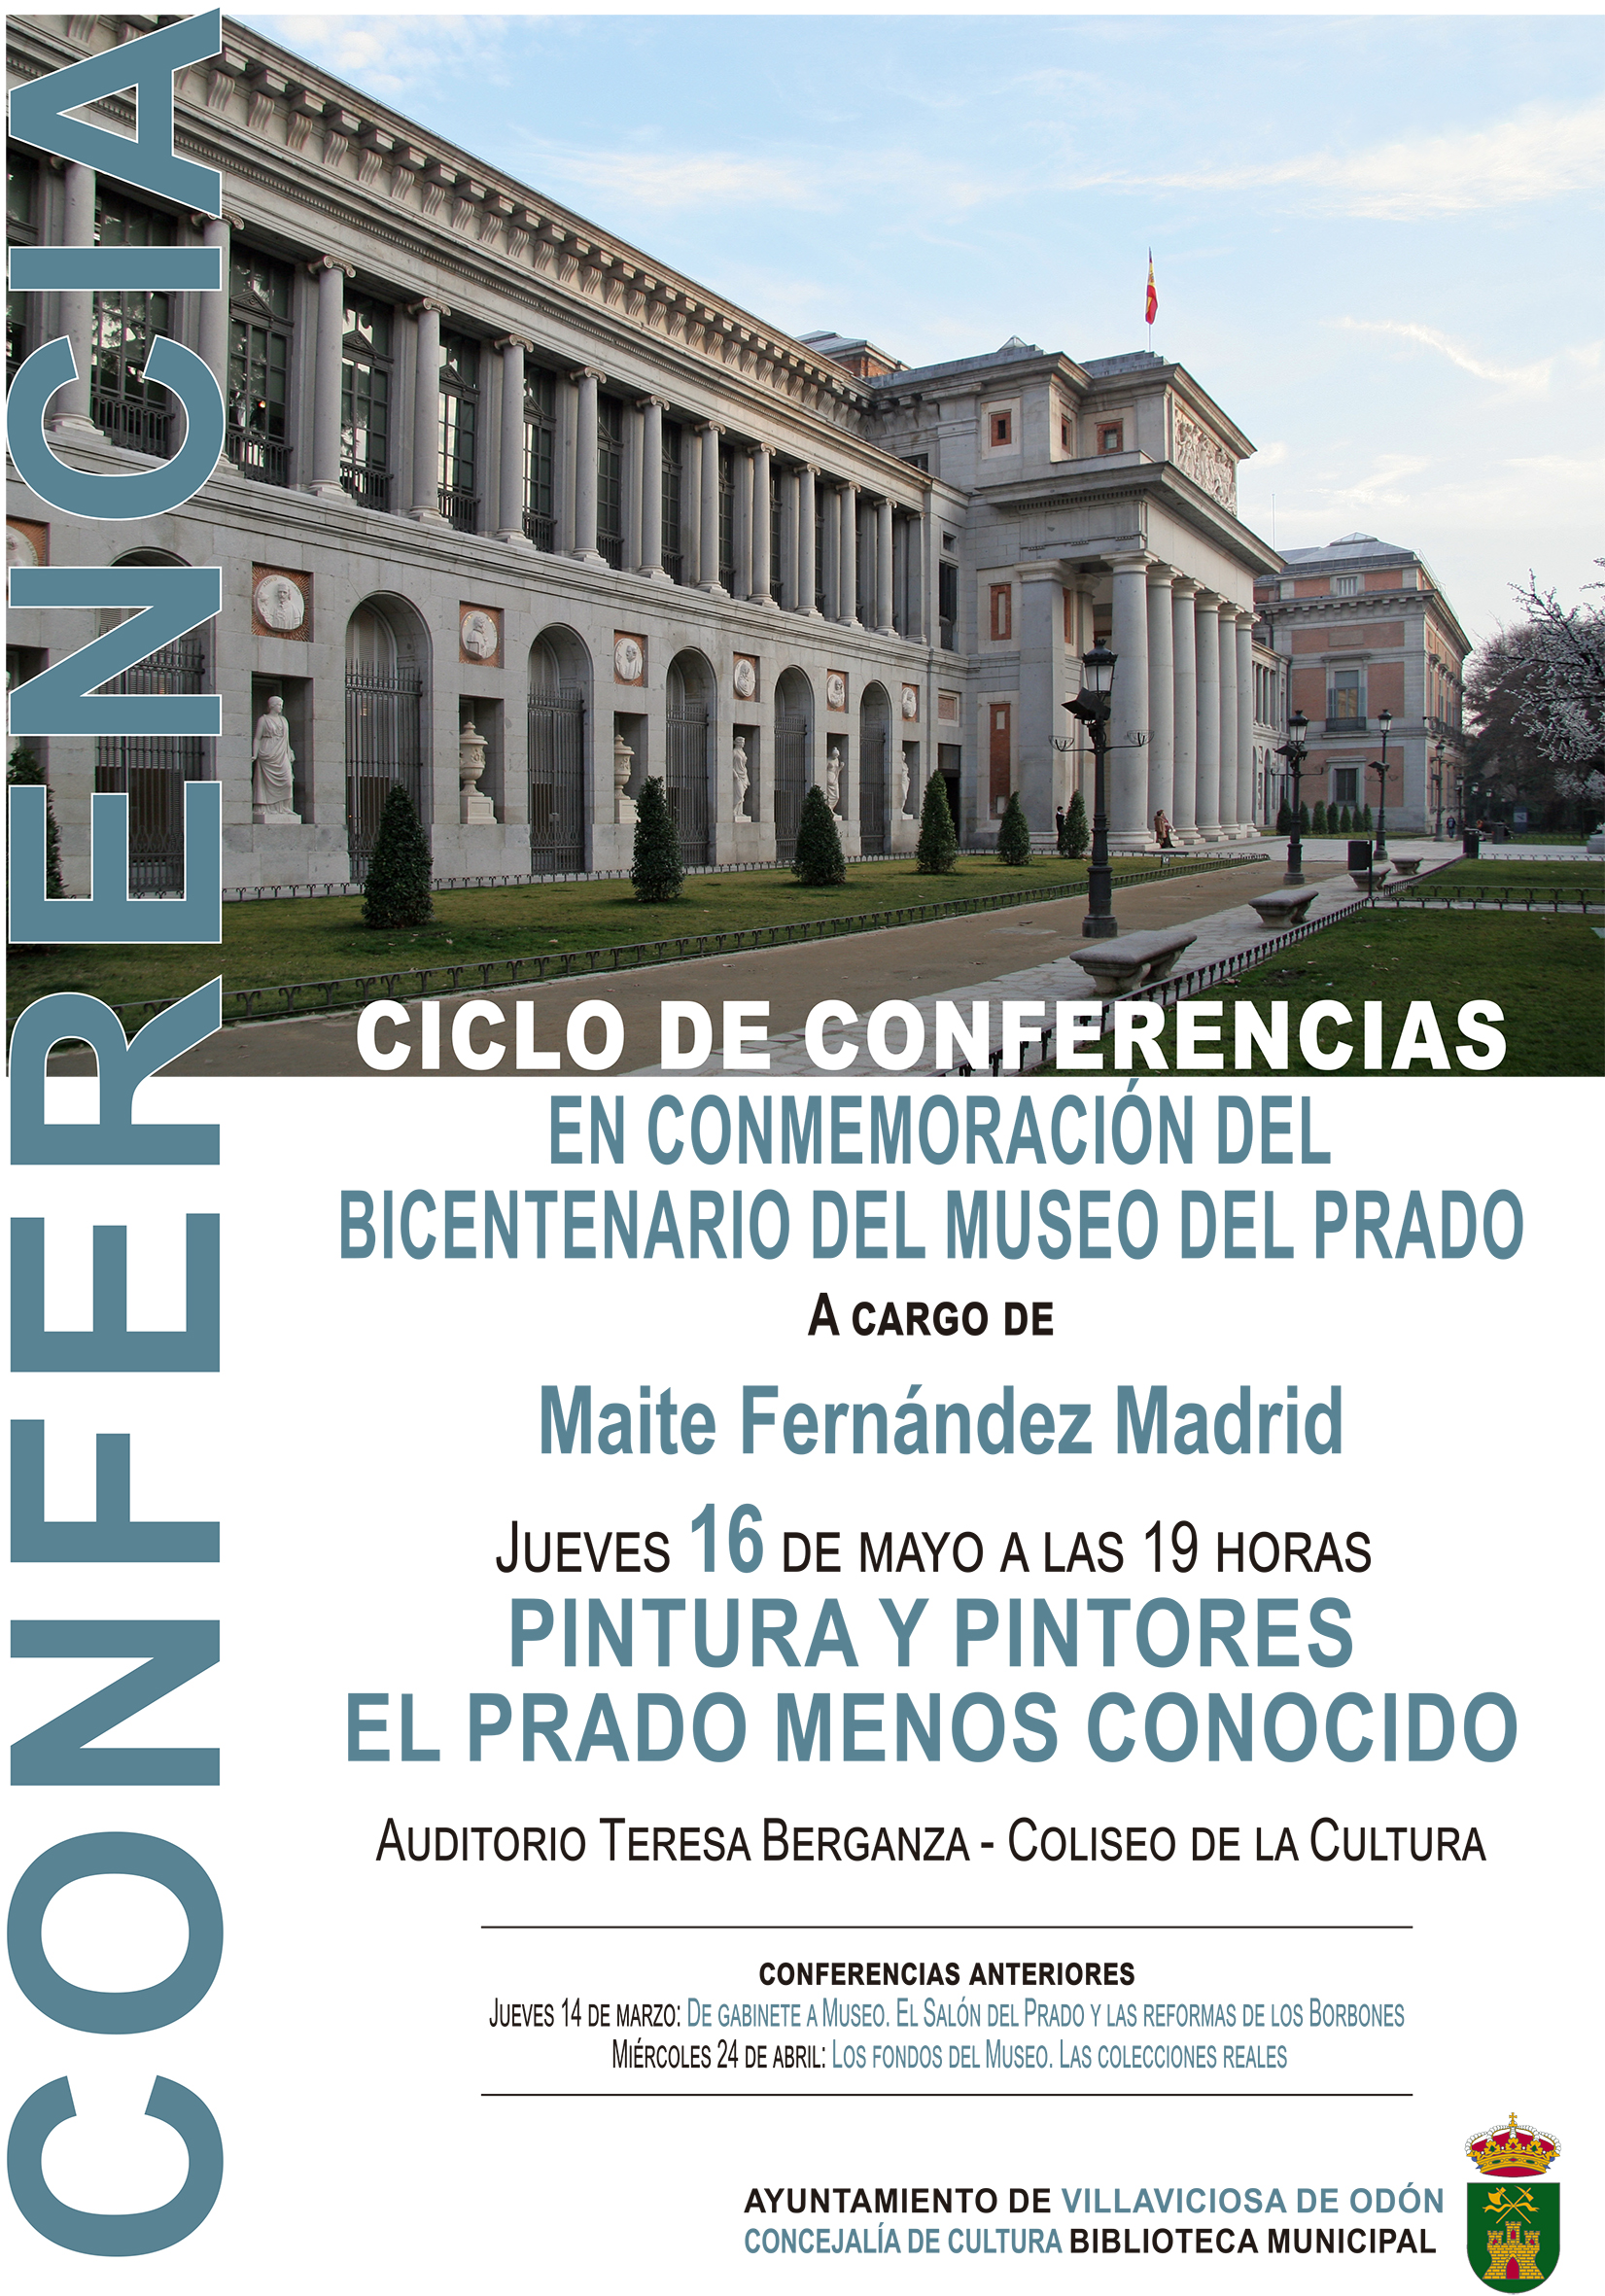 Ciclo de conferencias en el Bicentenario del Museo del Prado